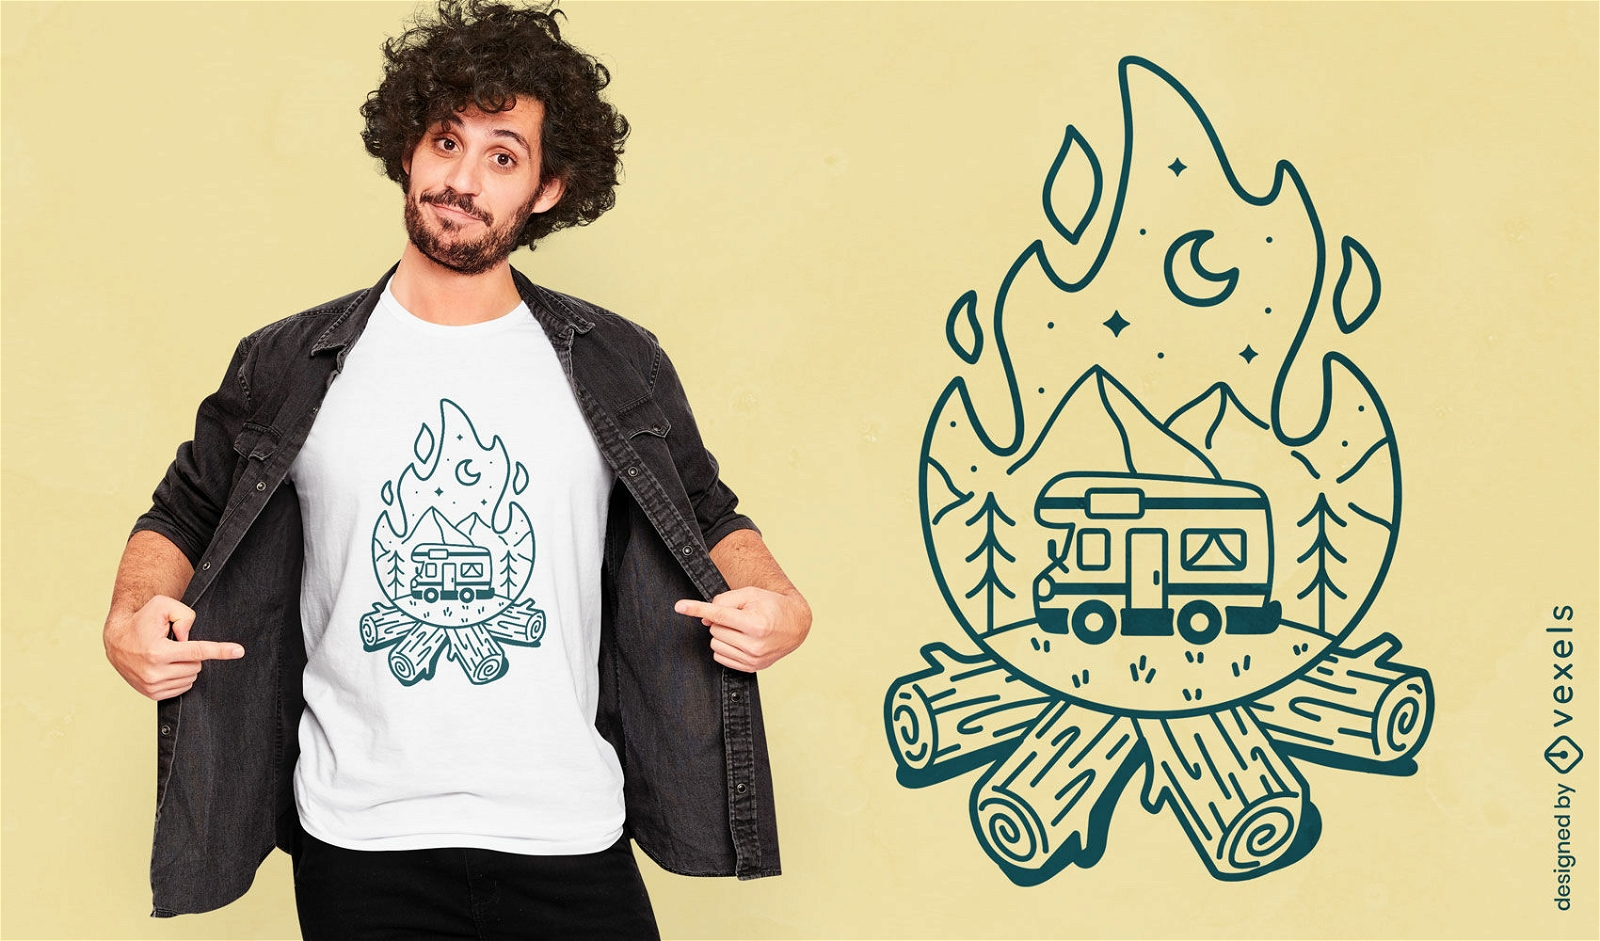 Caravan in bonfire camping t-shirt design